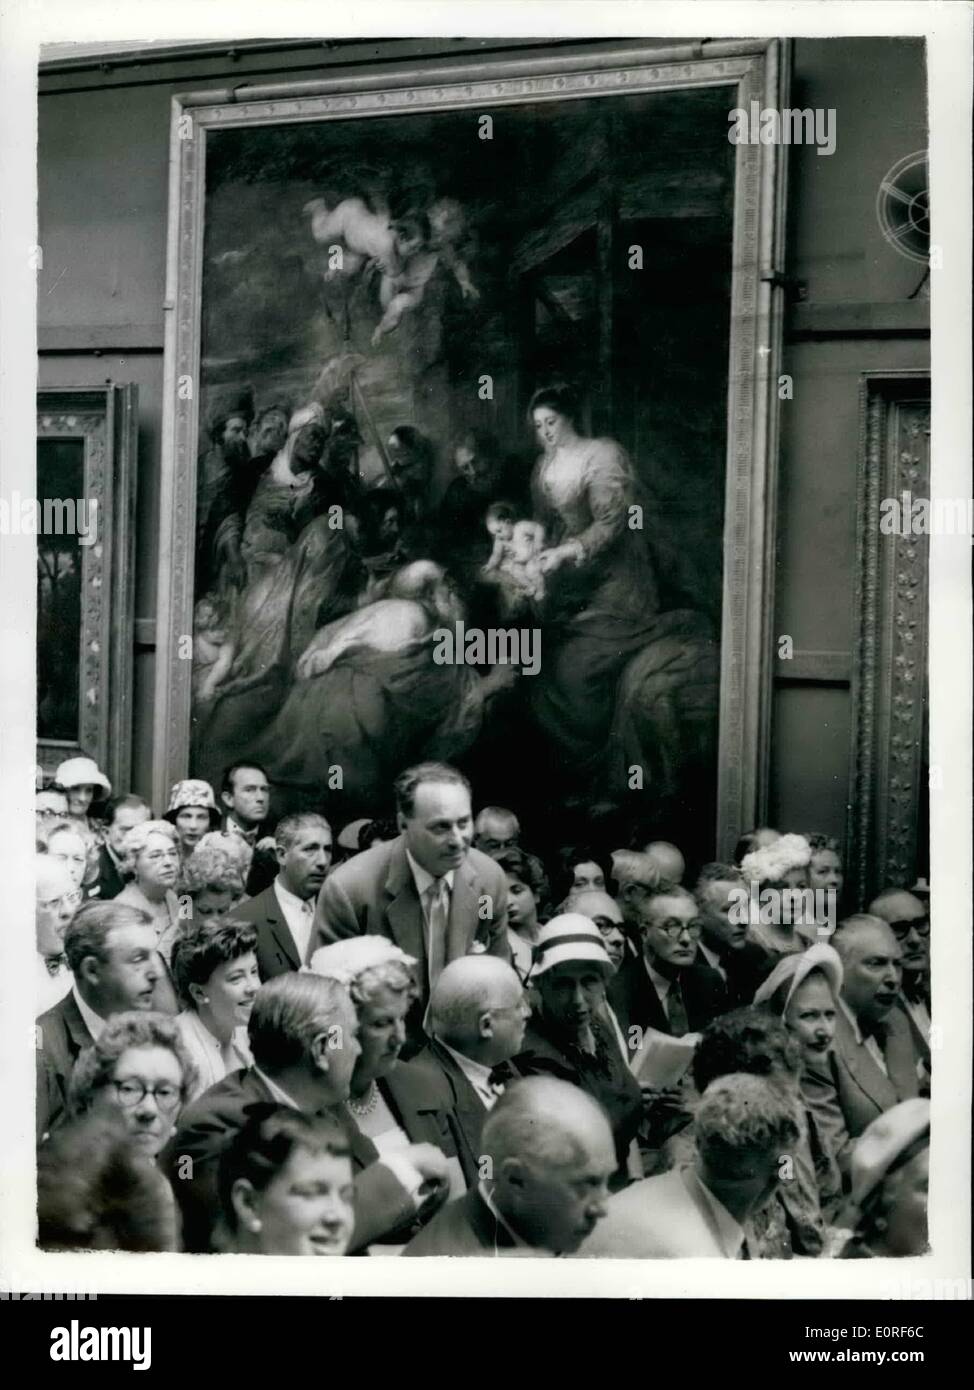 Juin 06, 1959 - Ruben's masterpiece vendu &pound;275 000... Prix record du monde. Le Ruben's masterpiece ''l'adoration des Mages'' - a été vendu pour le record du monde la figure de &pound;275 000 - chez Sotheby's ce matin.. Le tableau a été vendu pour aider à payer les droits de succession sur la succession de la Duc d'Westminitre.. Acheteur était un marchand d'art de Londres M. L.. Koetzer. Photo : M.- Koetzer sur le point de quitter la salle des ventes - après l'achat de l'immense tableau ce matin. Banque D'Images